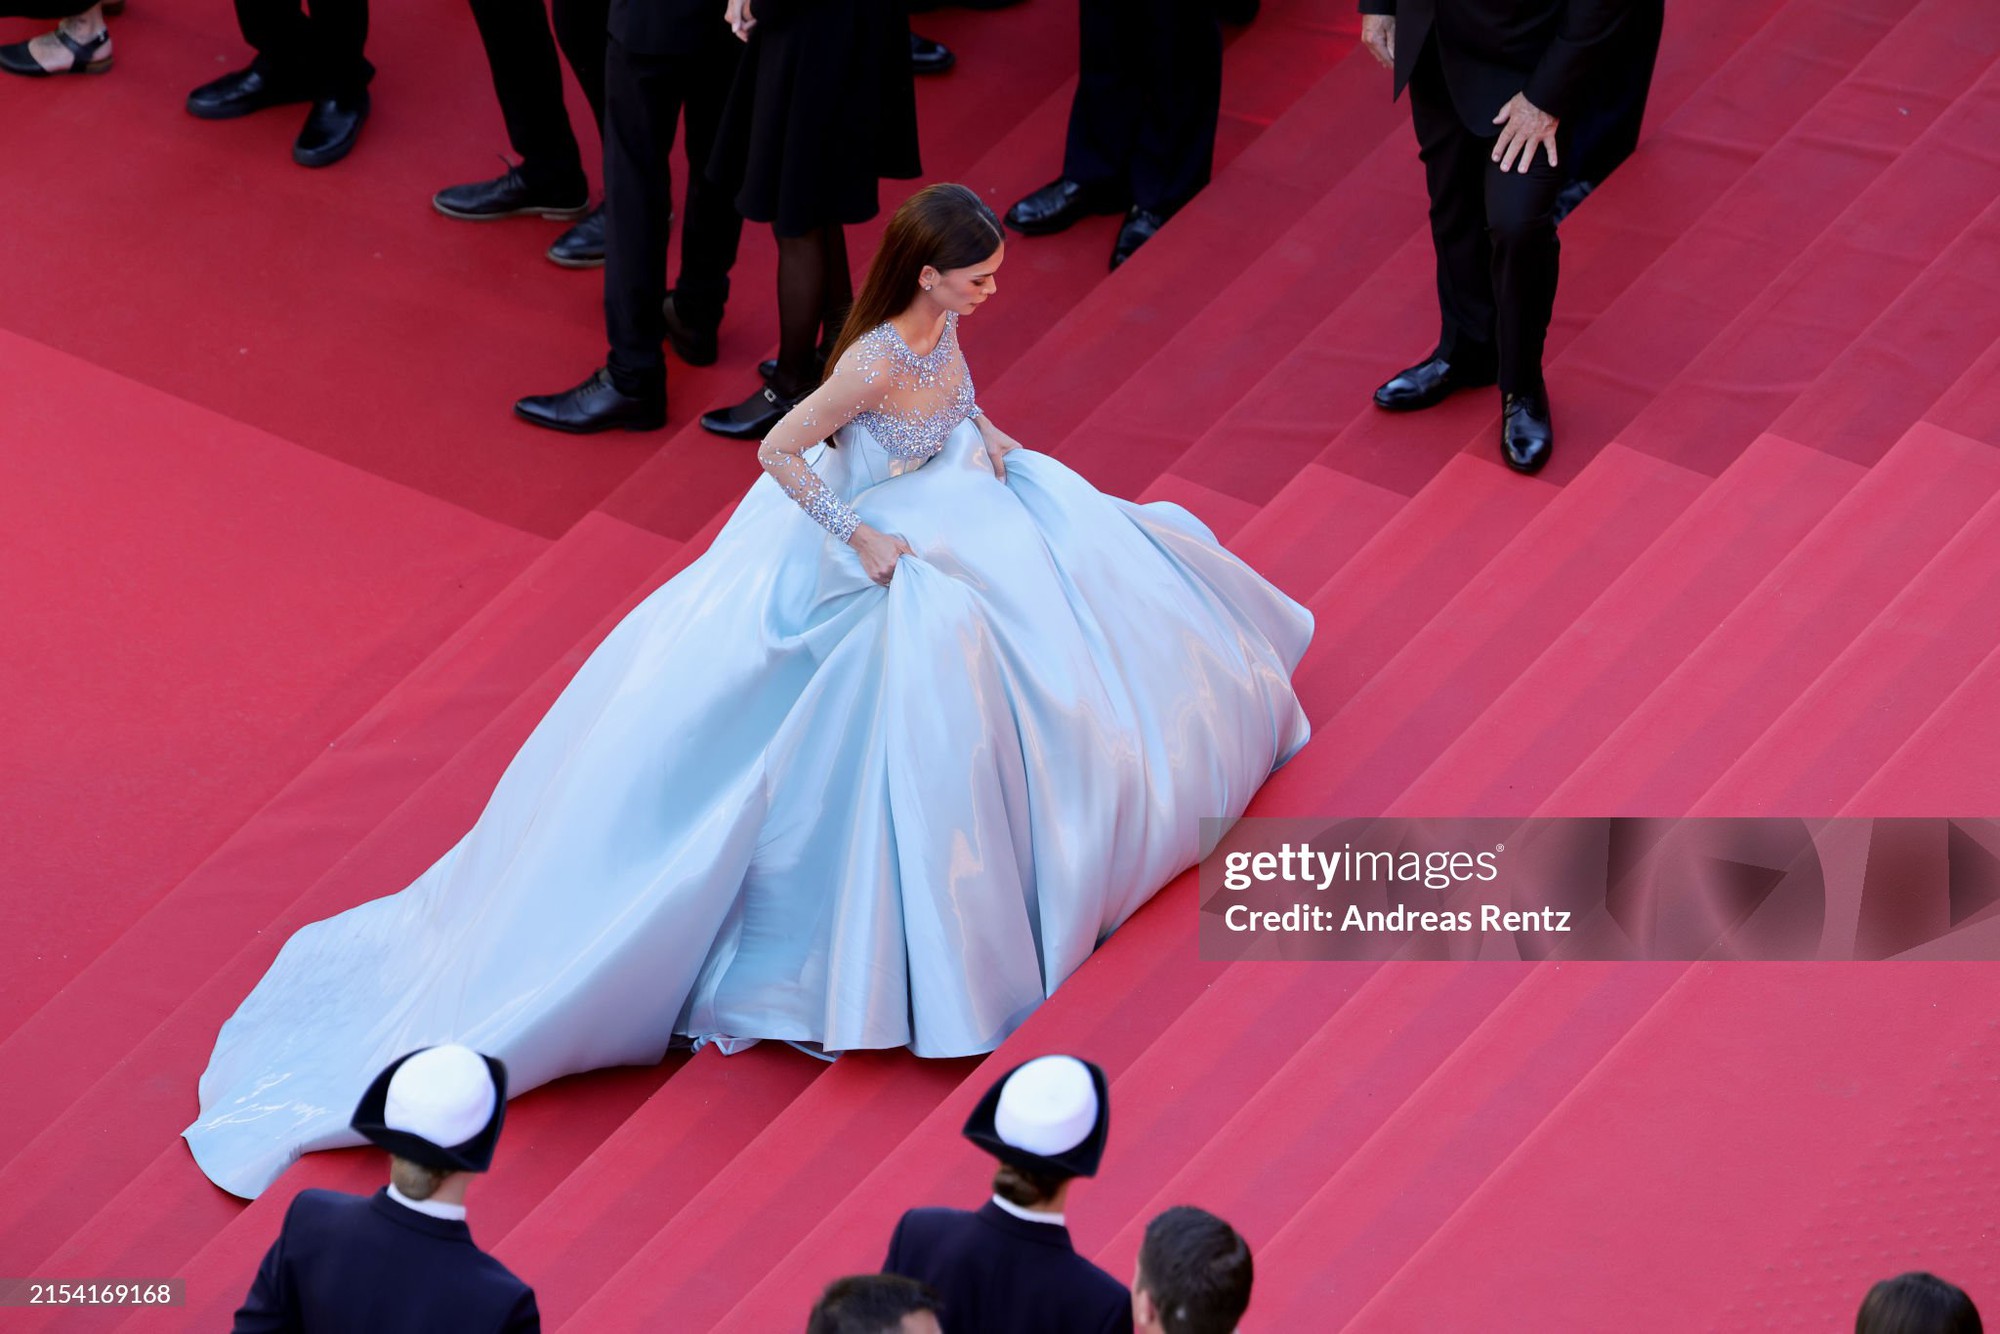 Thảm đỏ Cannes ngày 9: Hoa hậu Pia Wurtzbach hóa Cinderella, nữ ca sĩ hạng A tái xuất sau phốt quát tháo nhân viên - Ảnh 2.